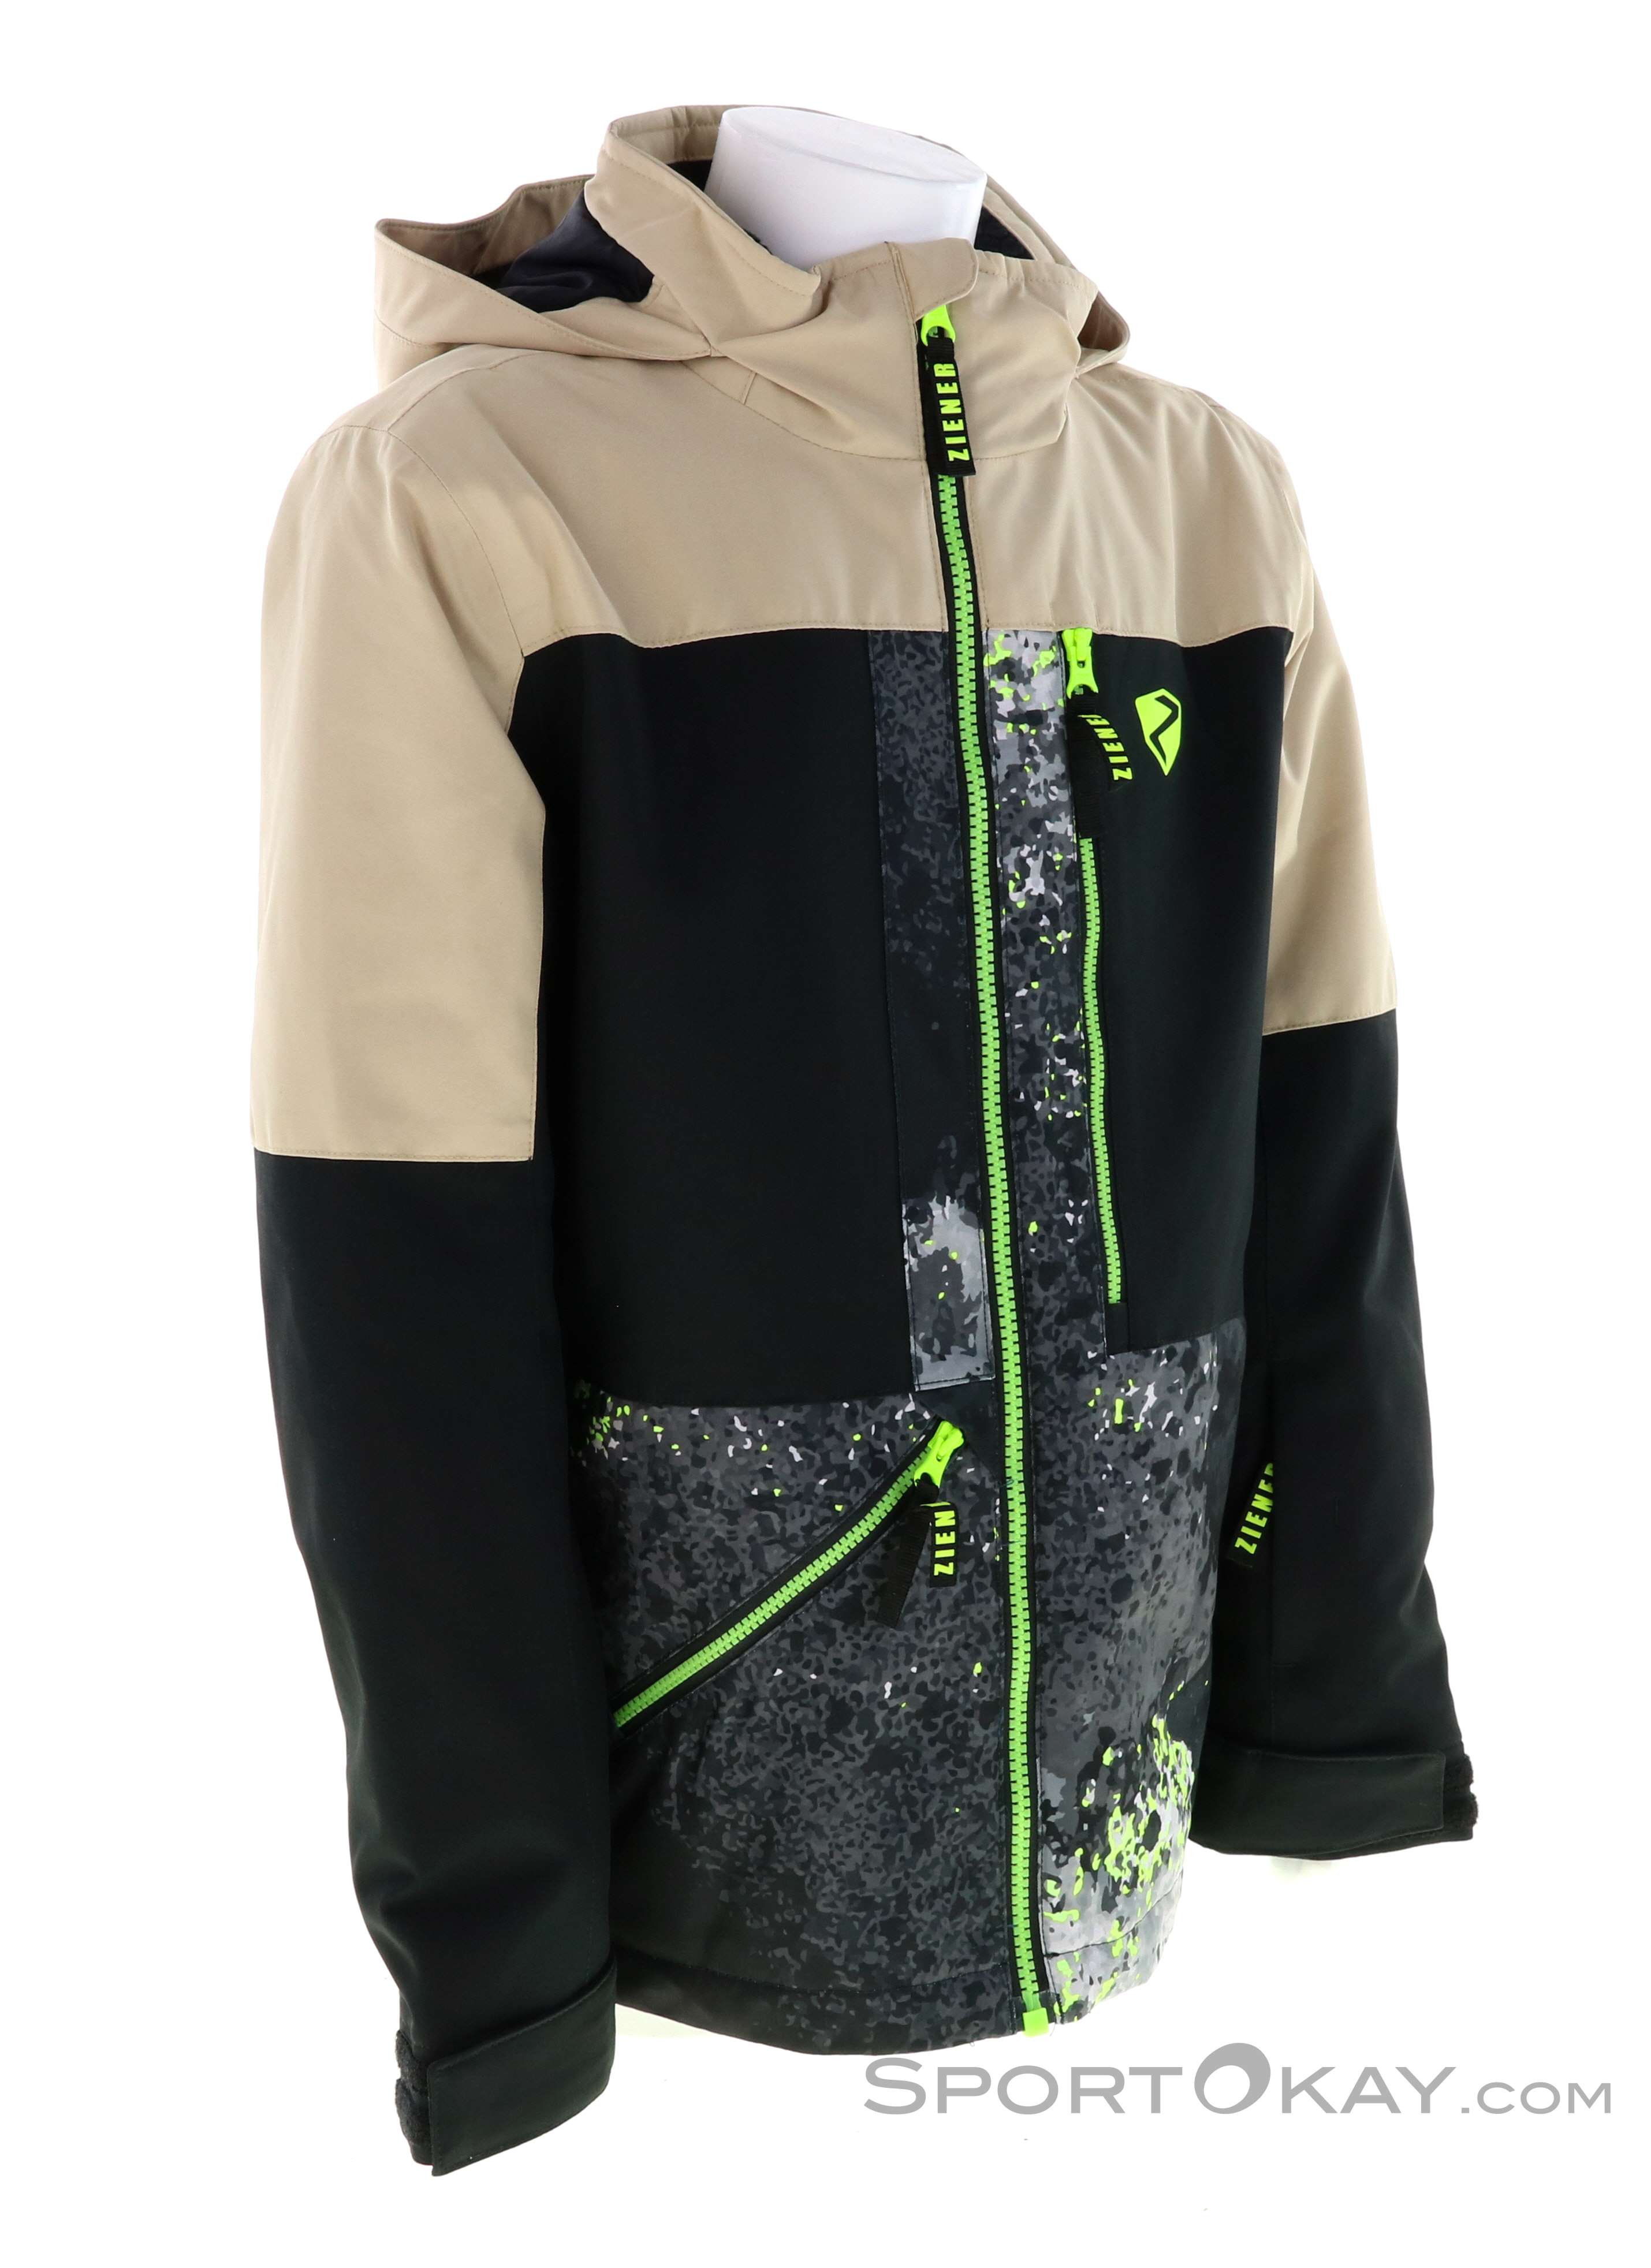 Ziener Antreyu Kinder Skijacke - Jacken - Outdoorbekleidung - Outdoor - Alle